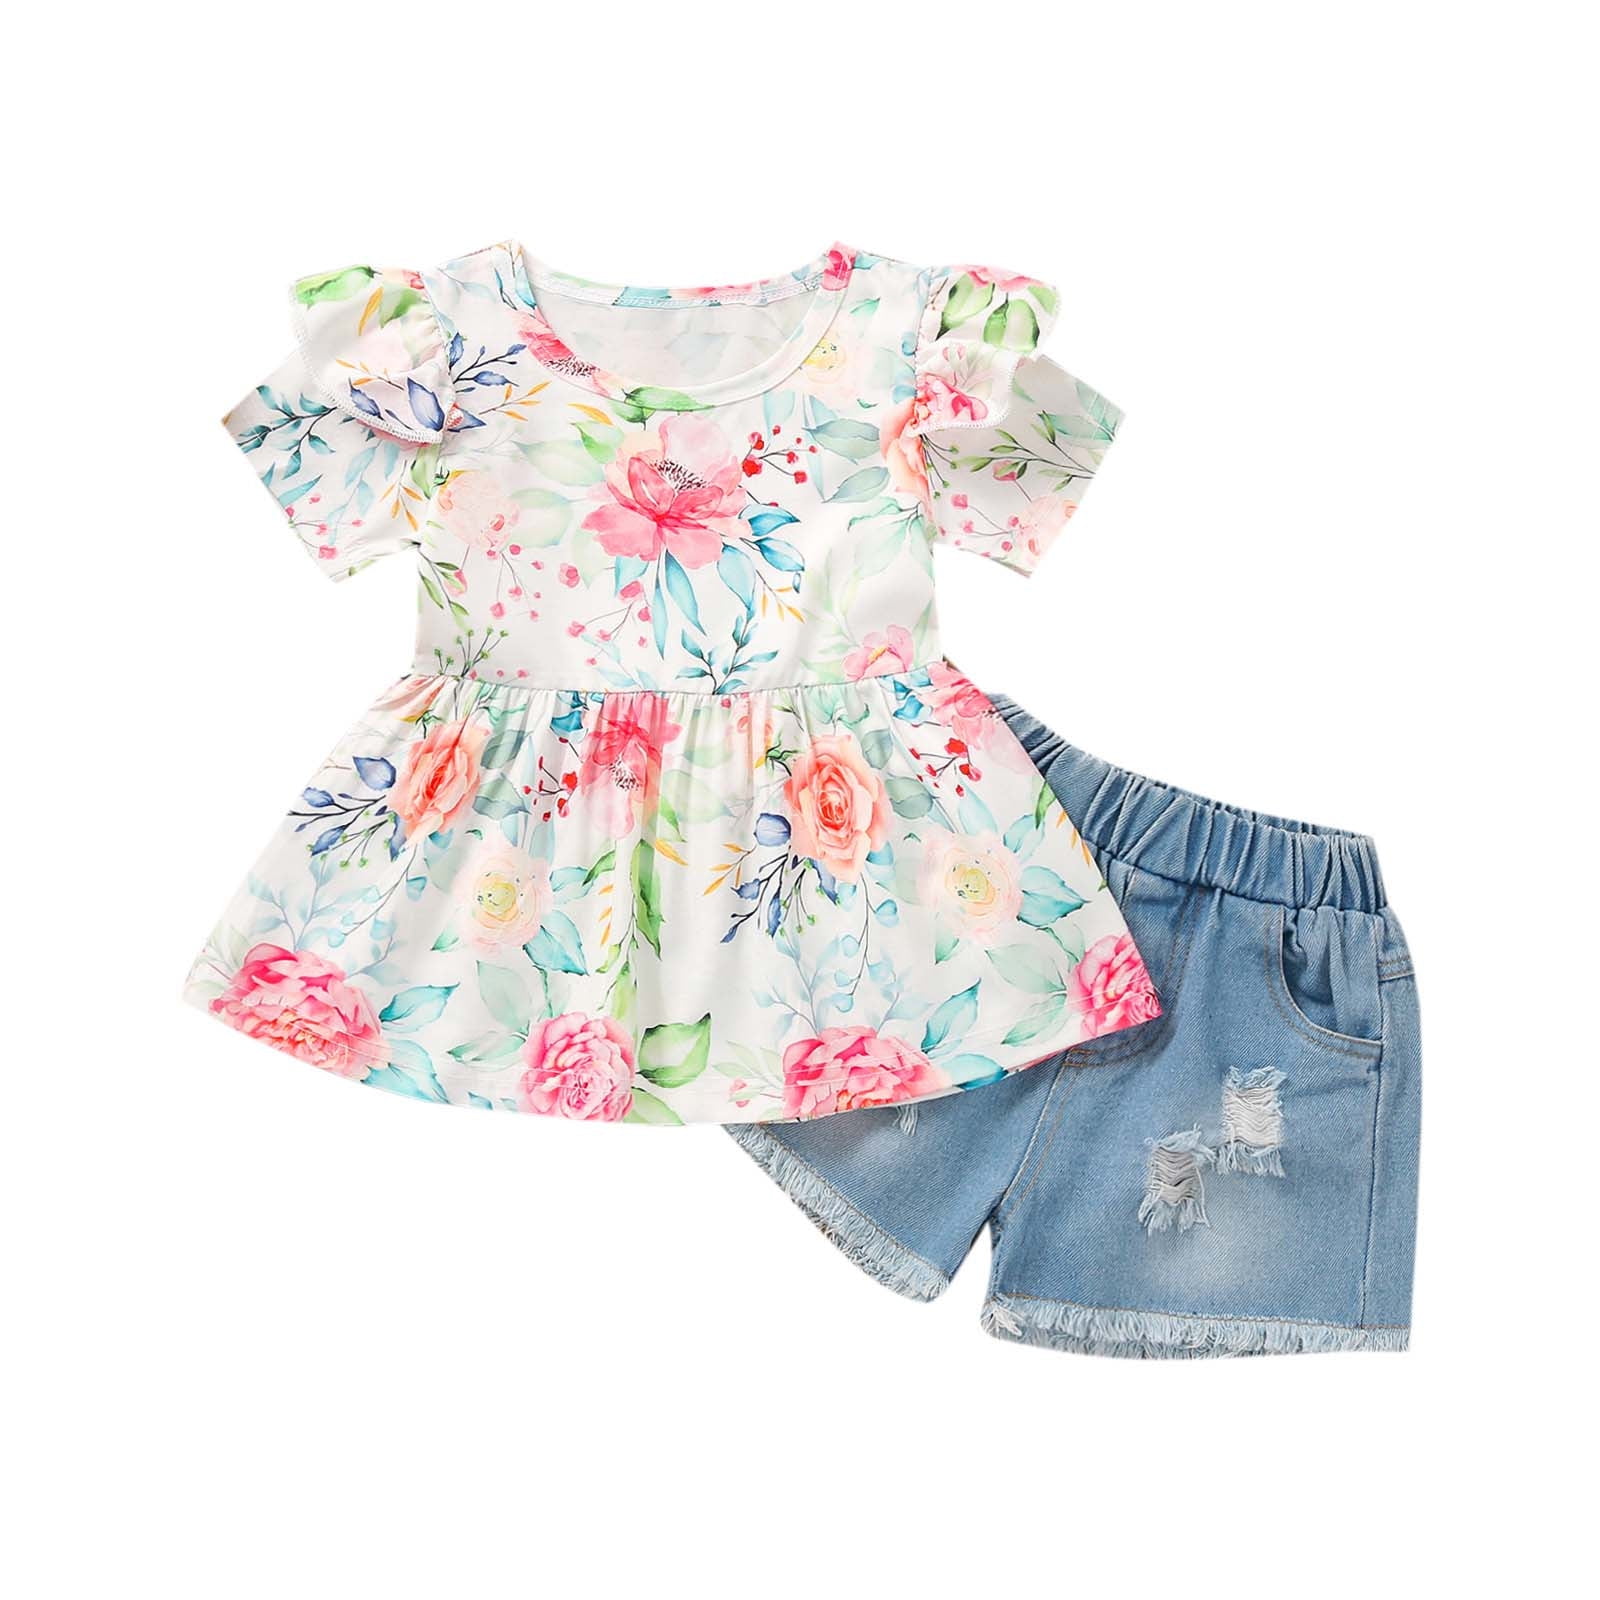 Efsteb Kids Toddler Baby Girls Clothes Summer Fashion Sun Flower Short ...